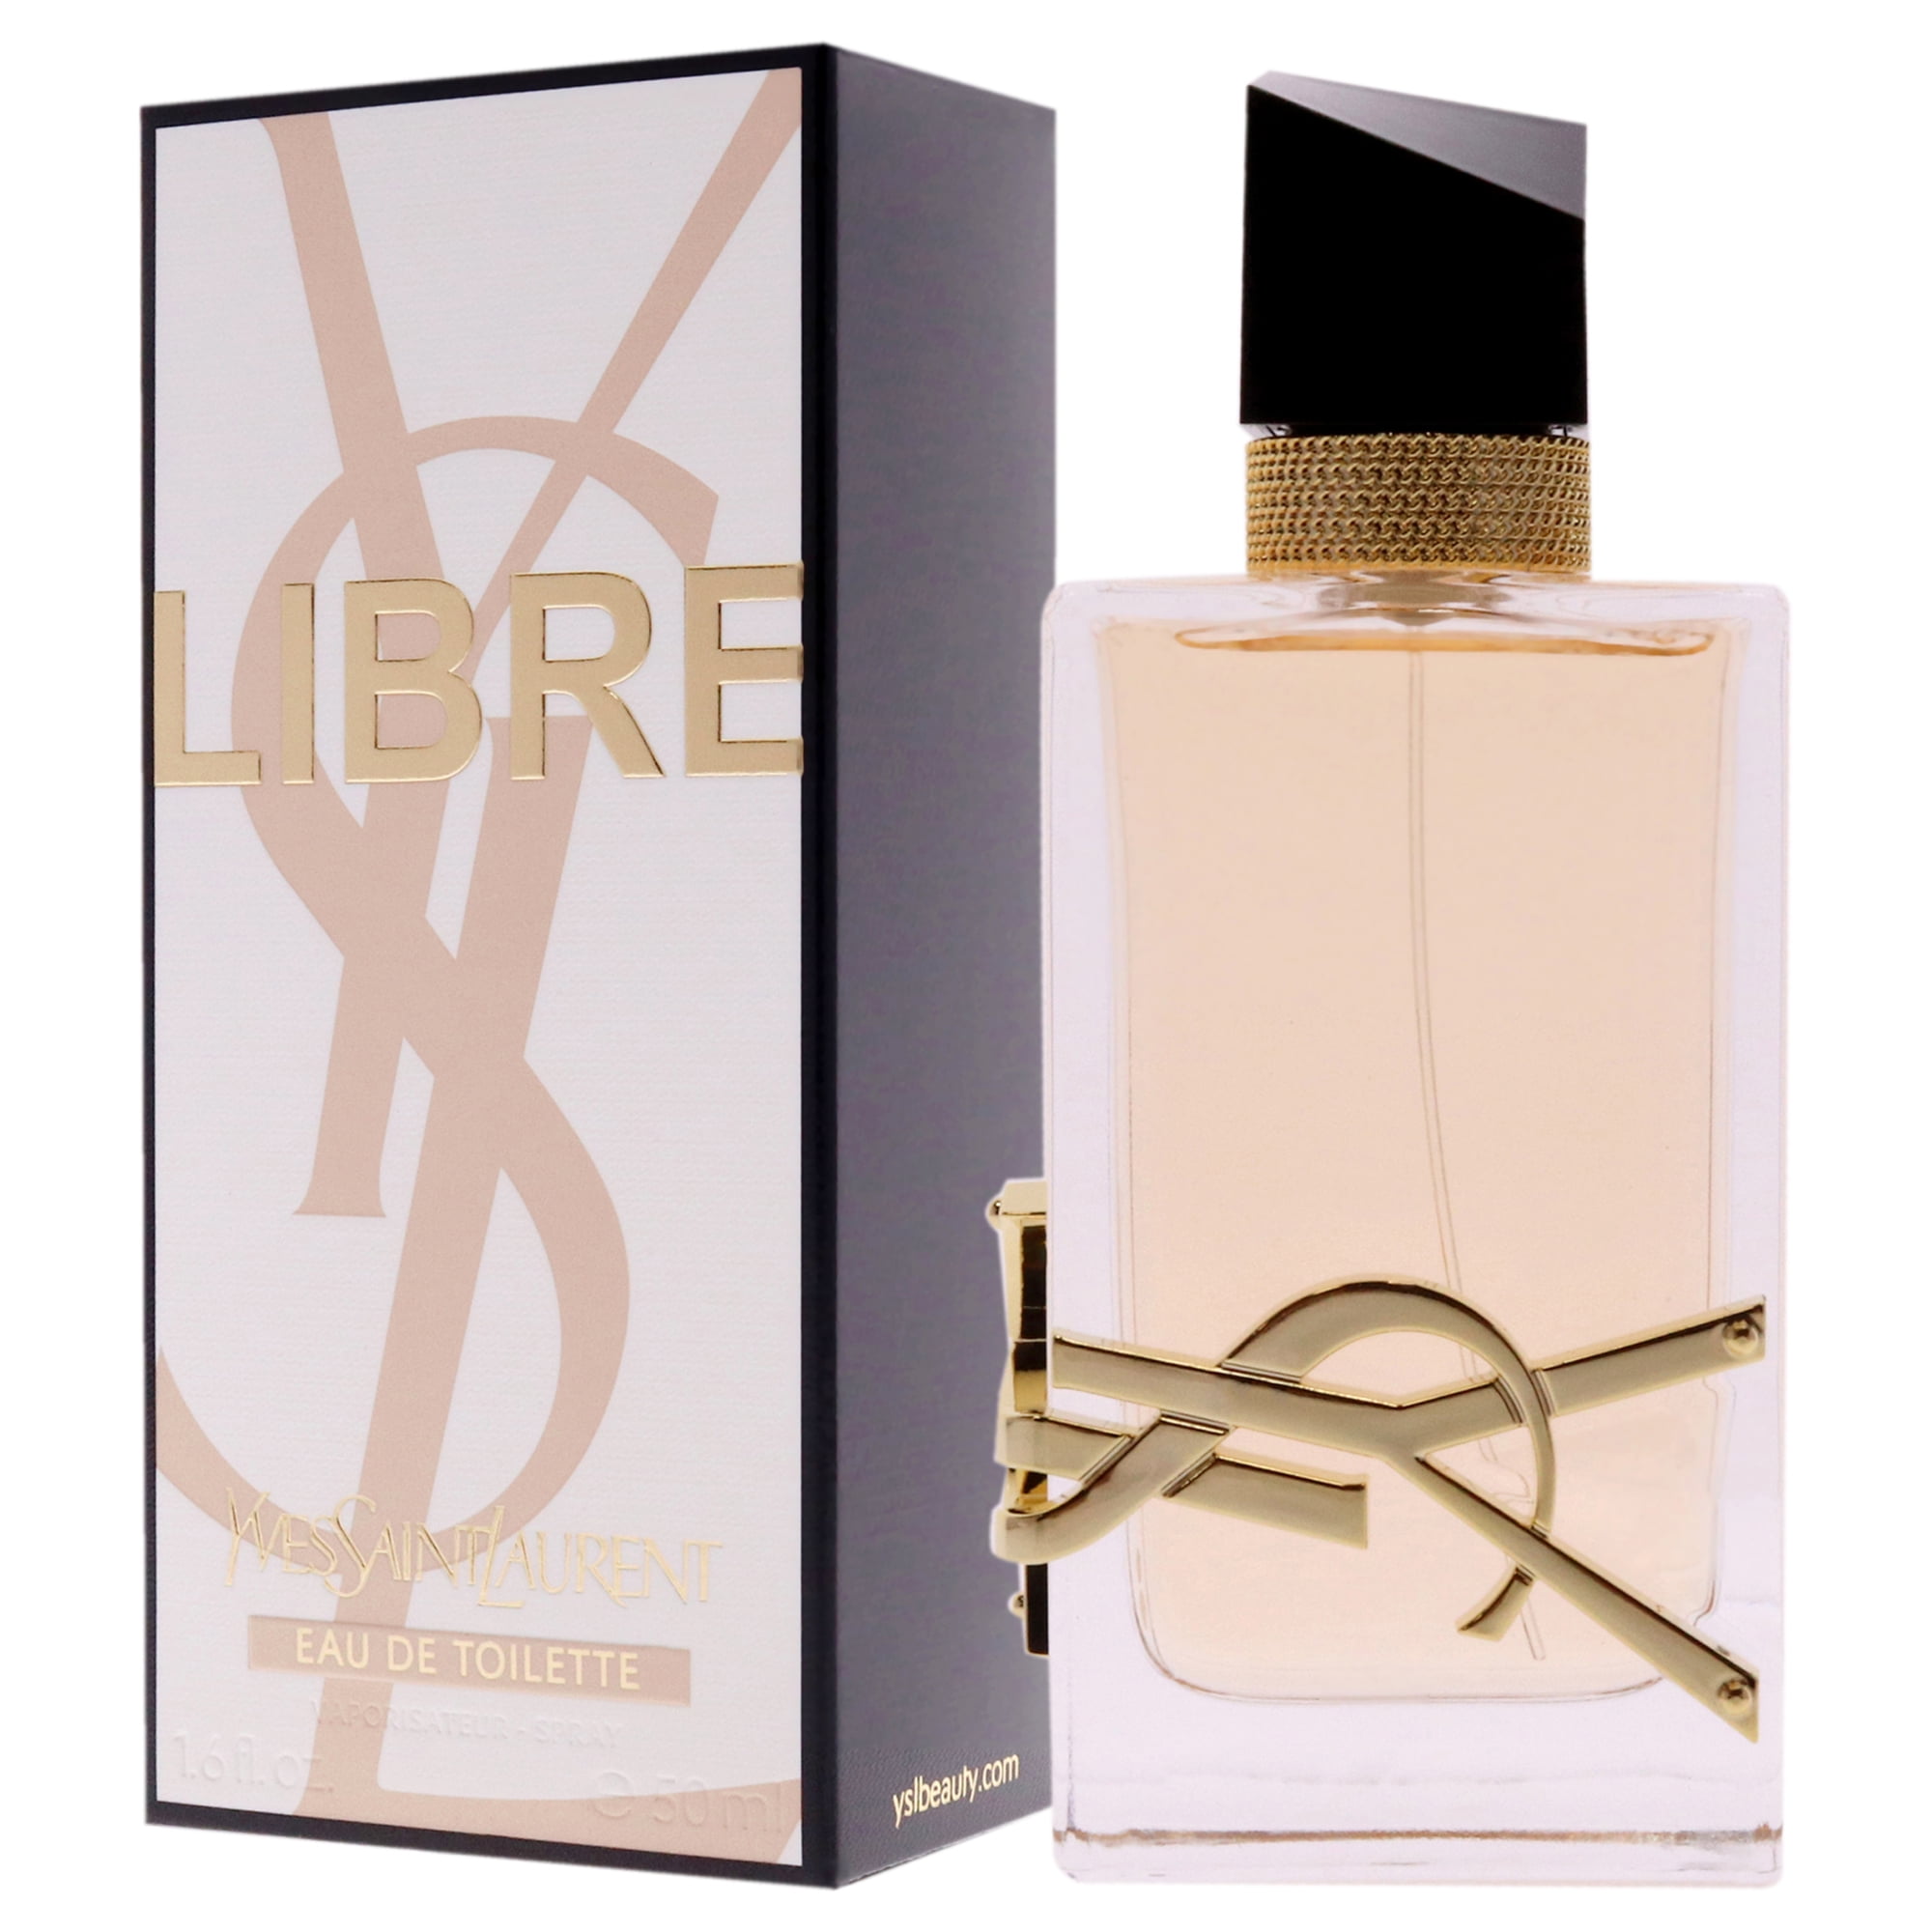 Yves Saint Laurent Ladies Libre Le Parfum EDP Spray 1.6 oz Fragrances  3614273776110